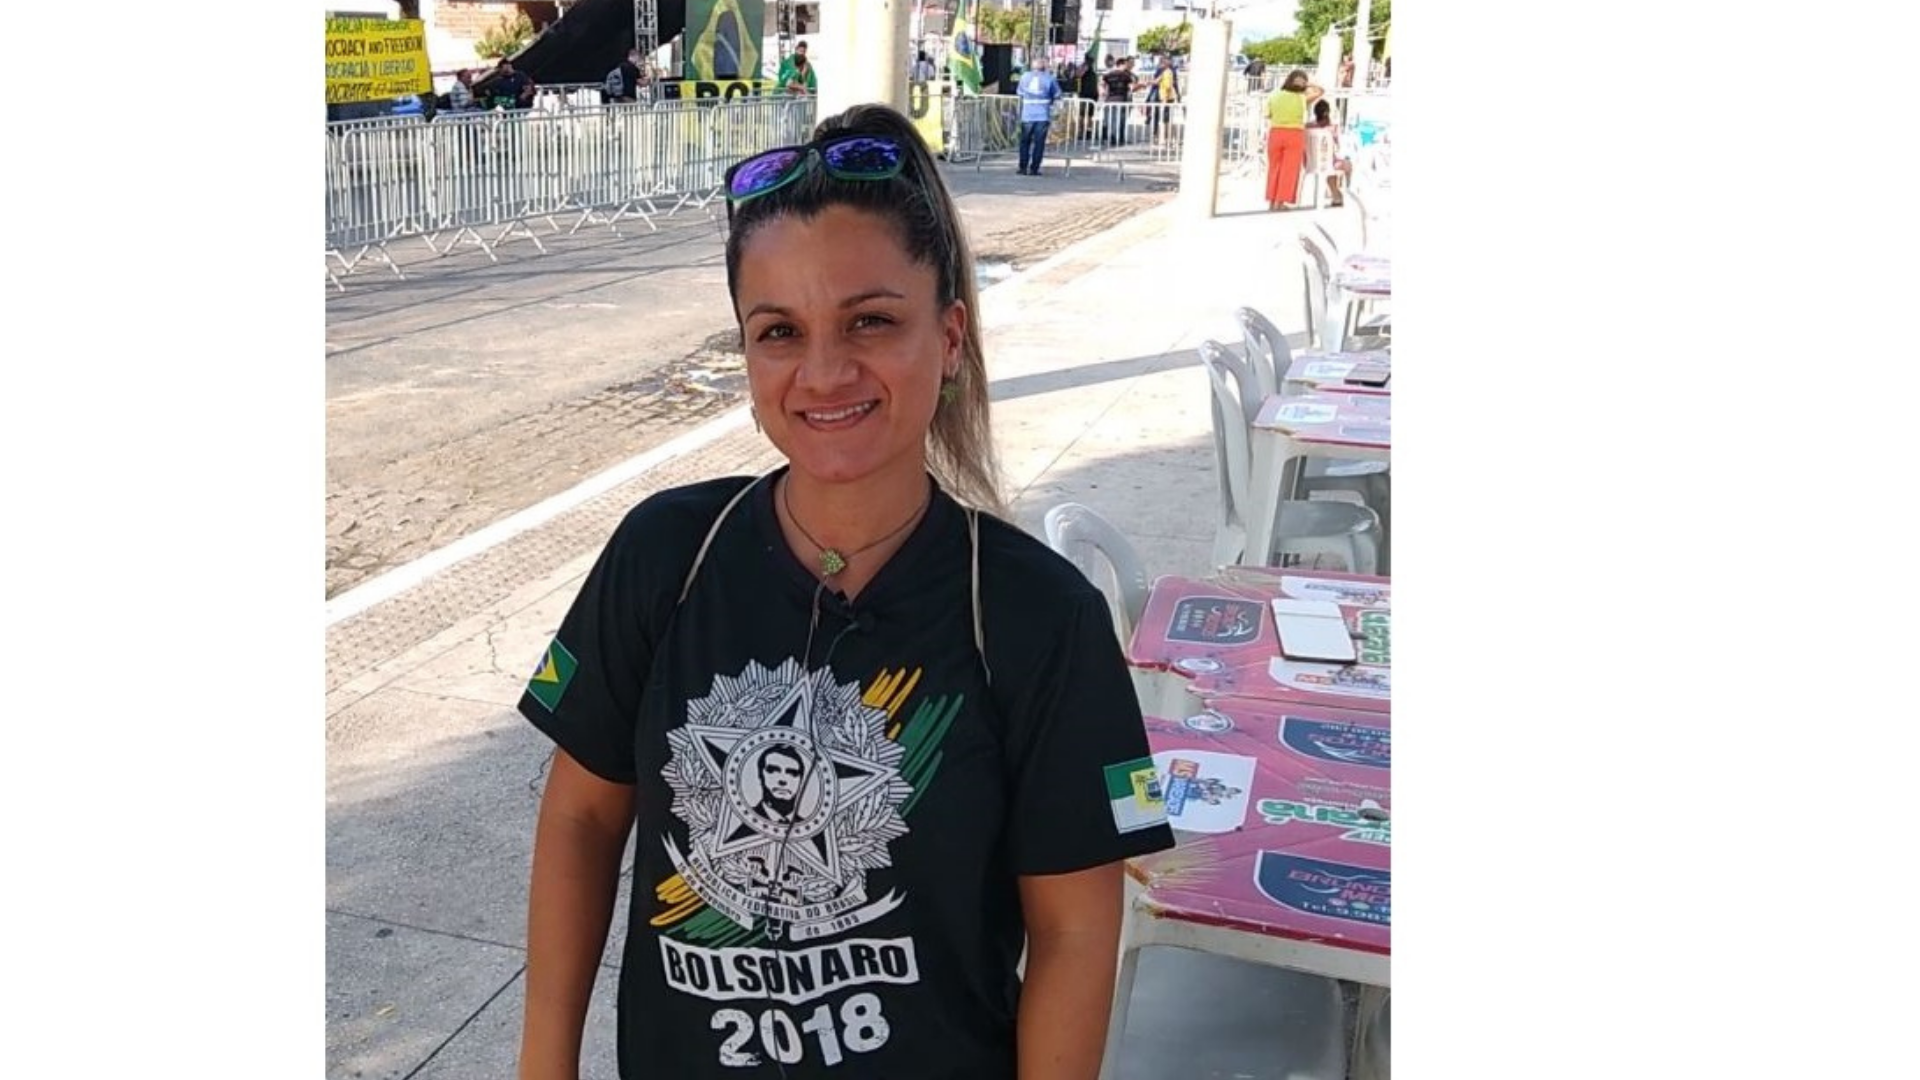 Ana Paula usa camisa escrita com o nome "Bolsonaro 2018". Ela está sorrindo e tem o cabelo preso em formato rabo de cavalo.